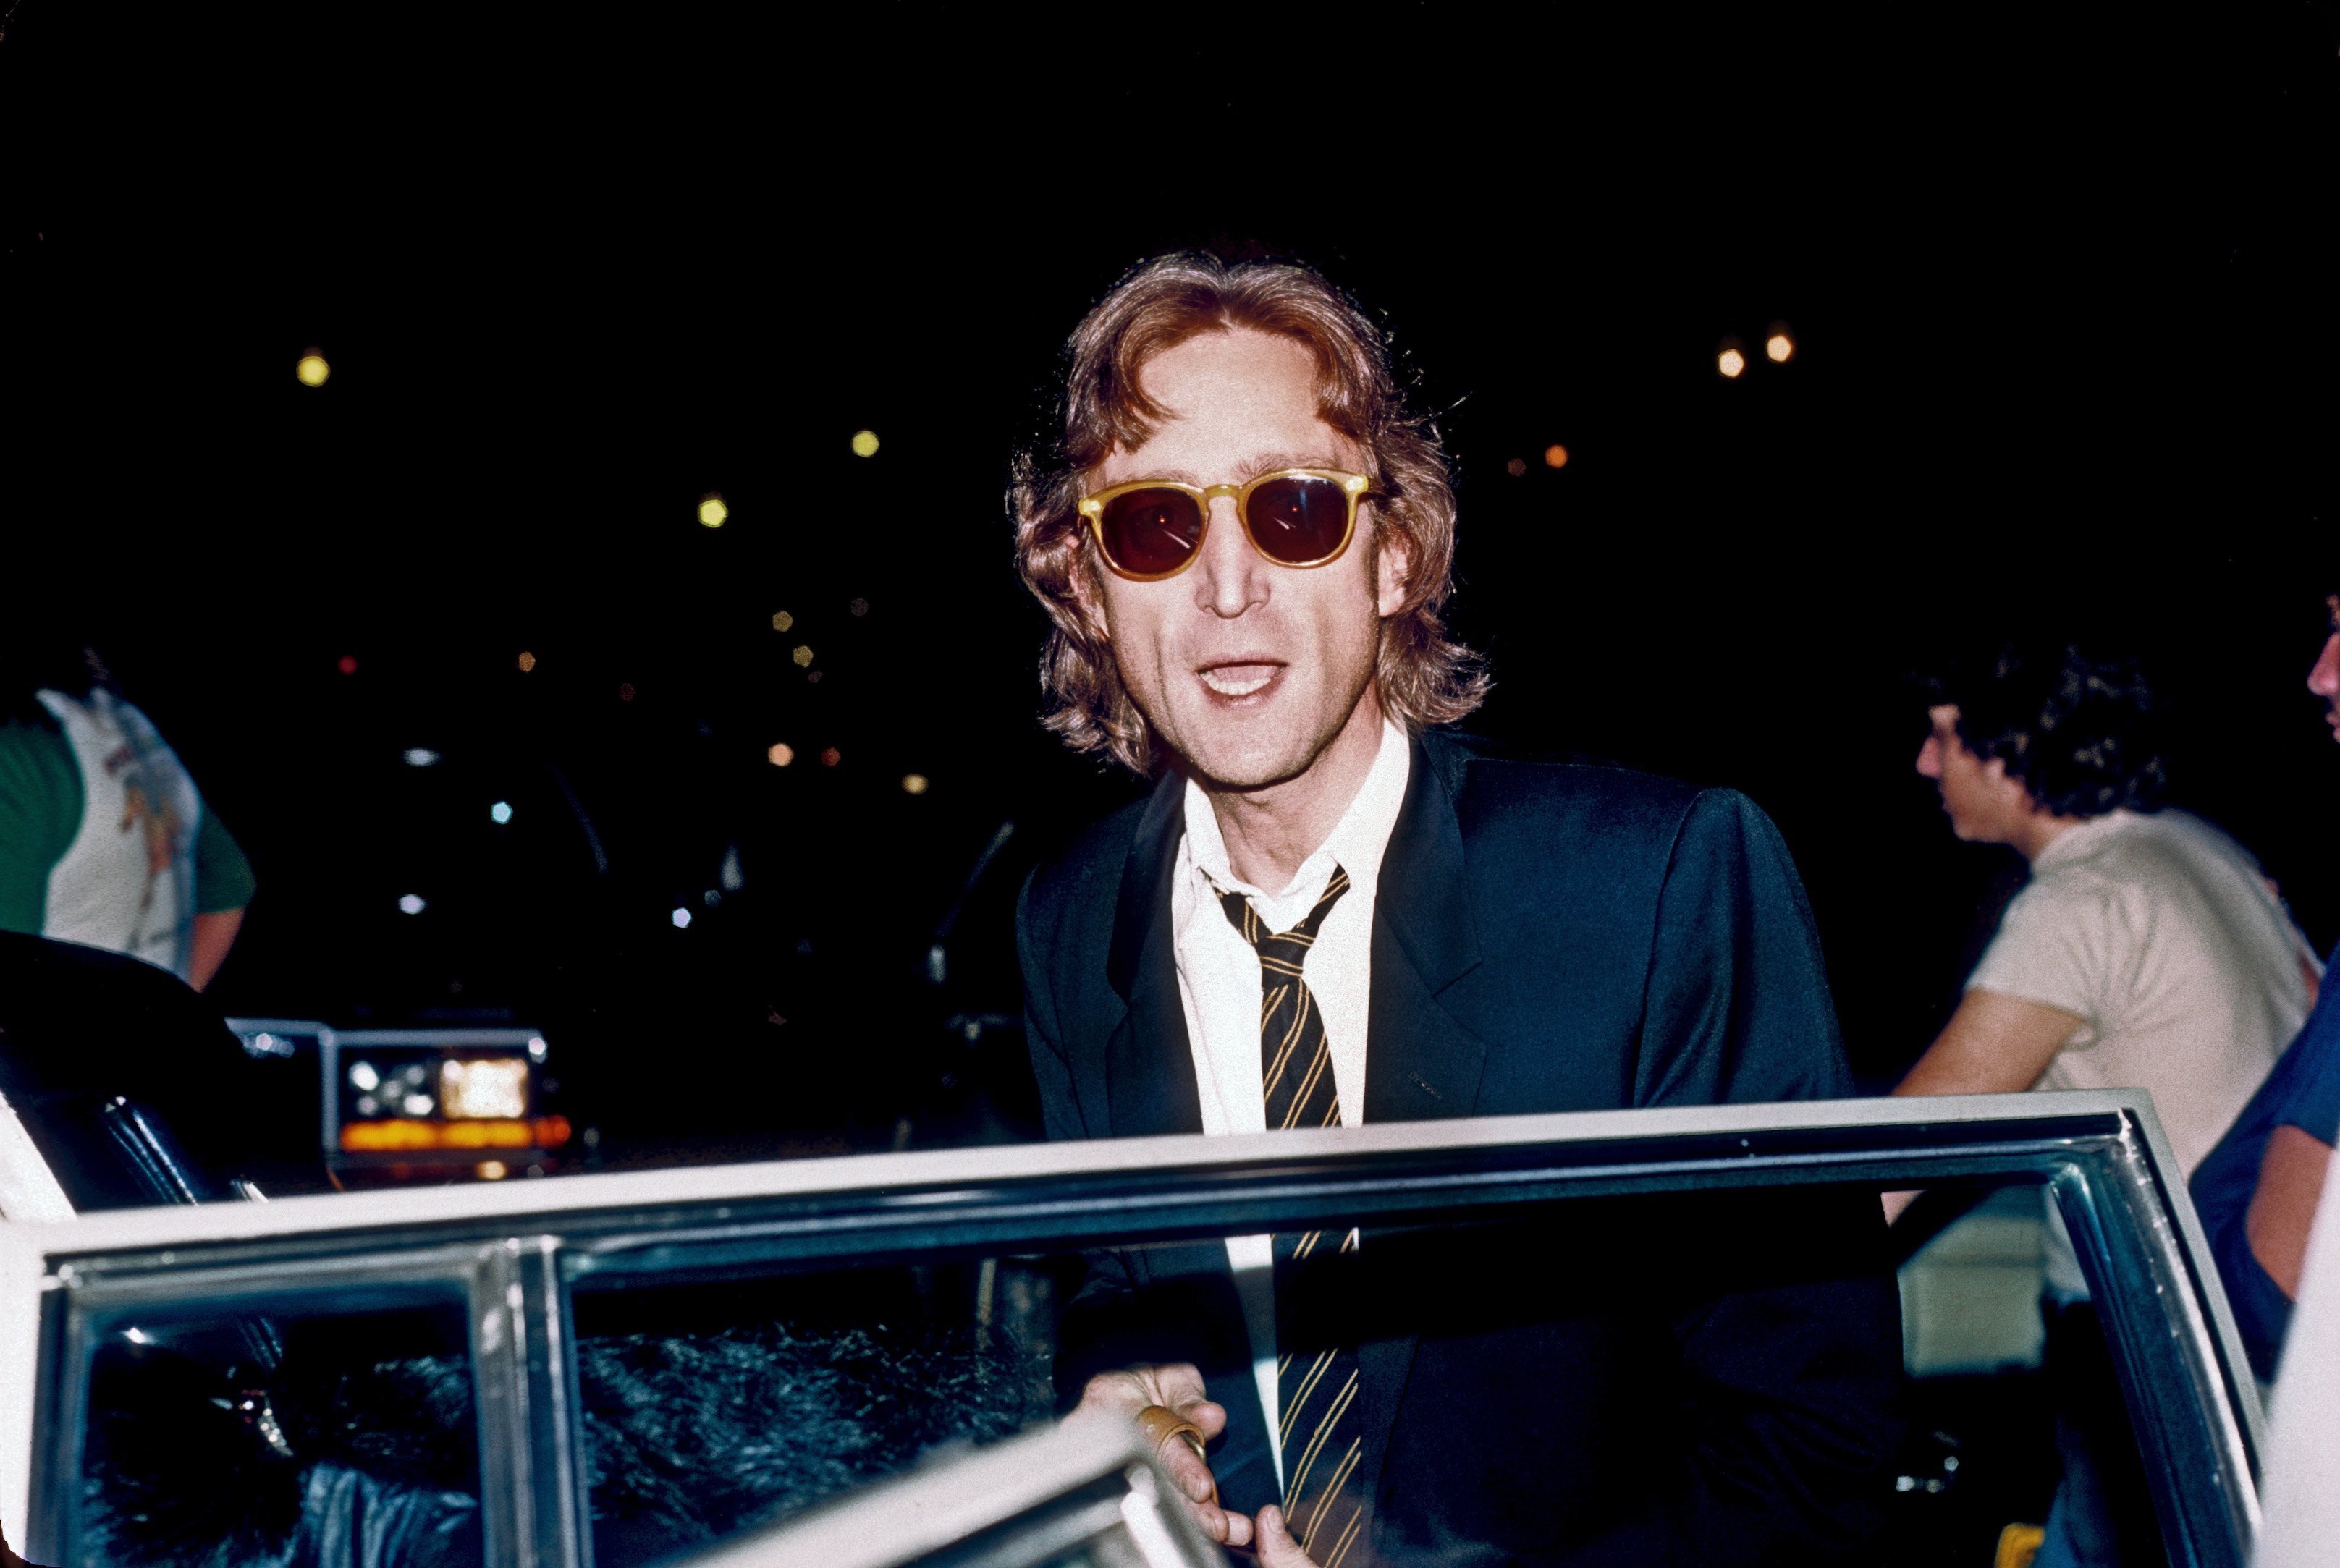 John Lennon arrives at the Times Square recording studio The Hit Factory